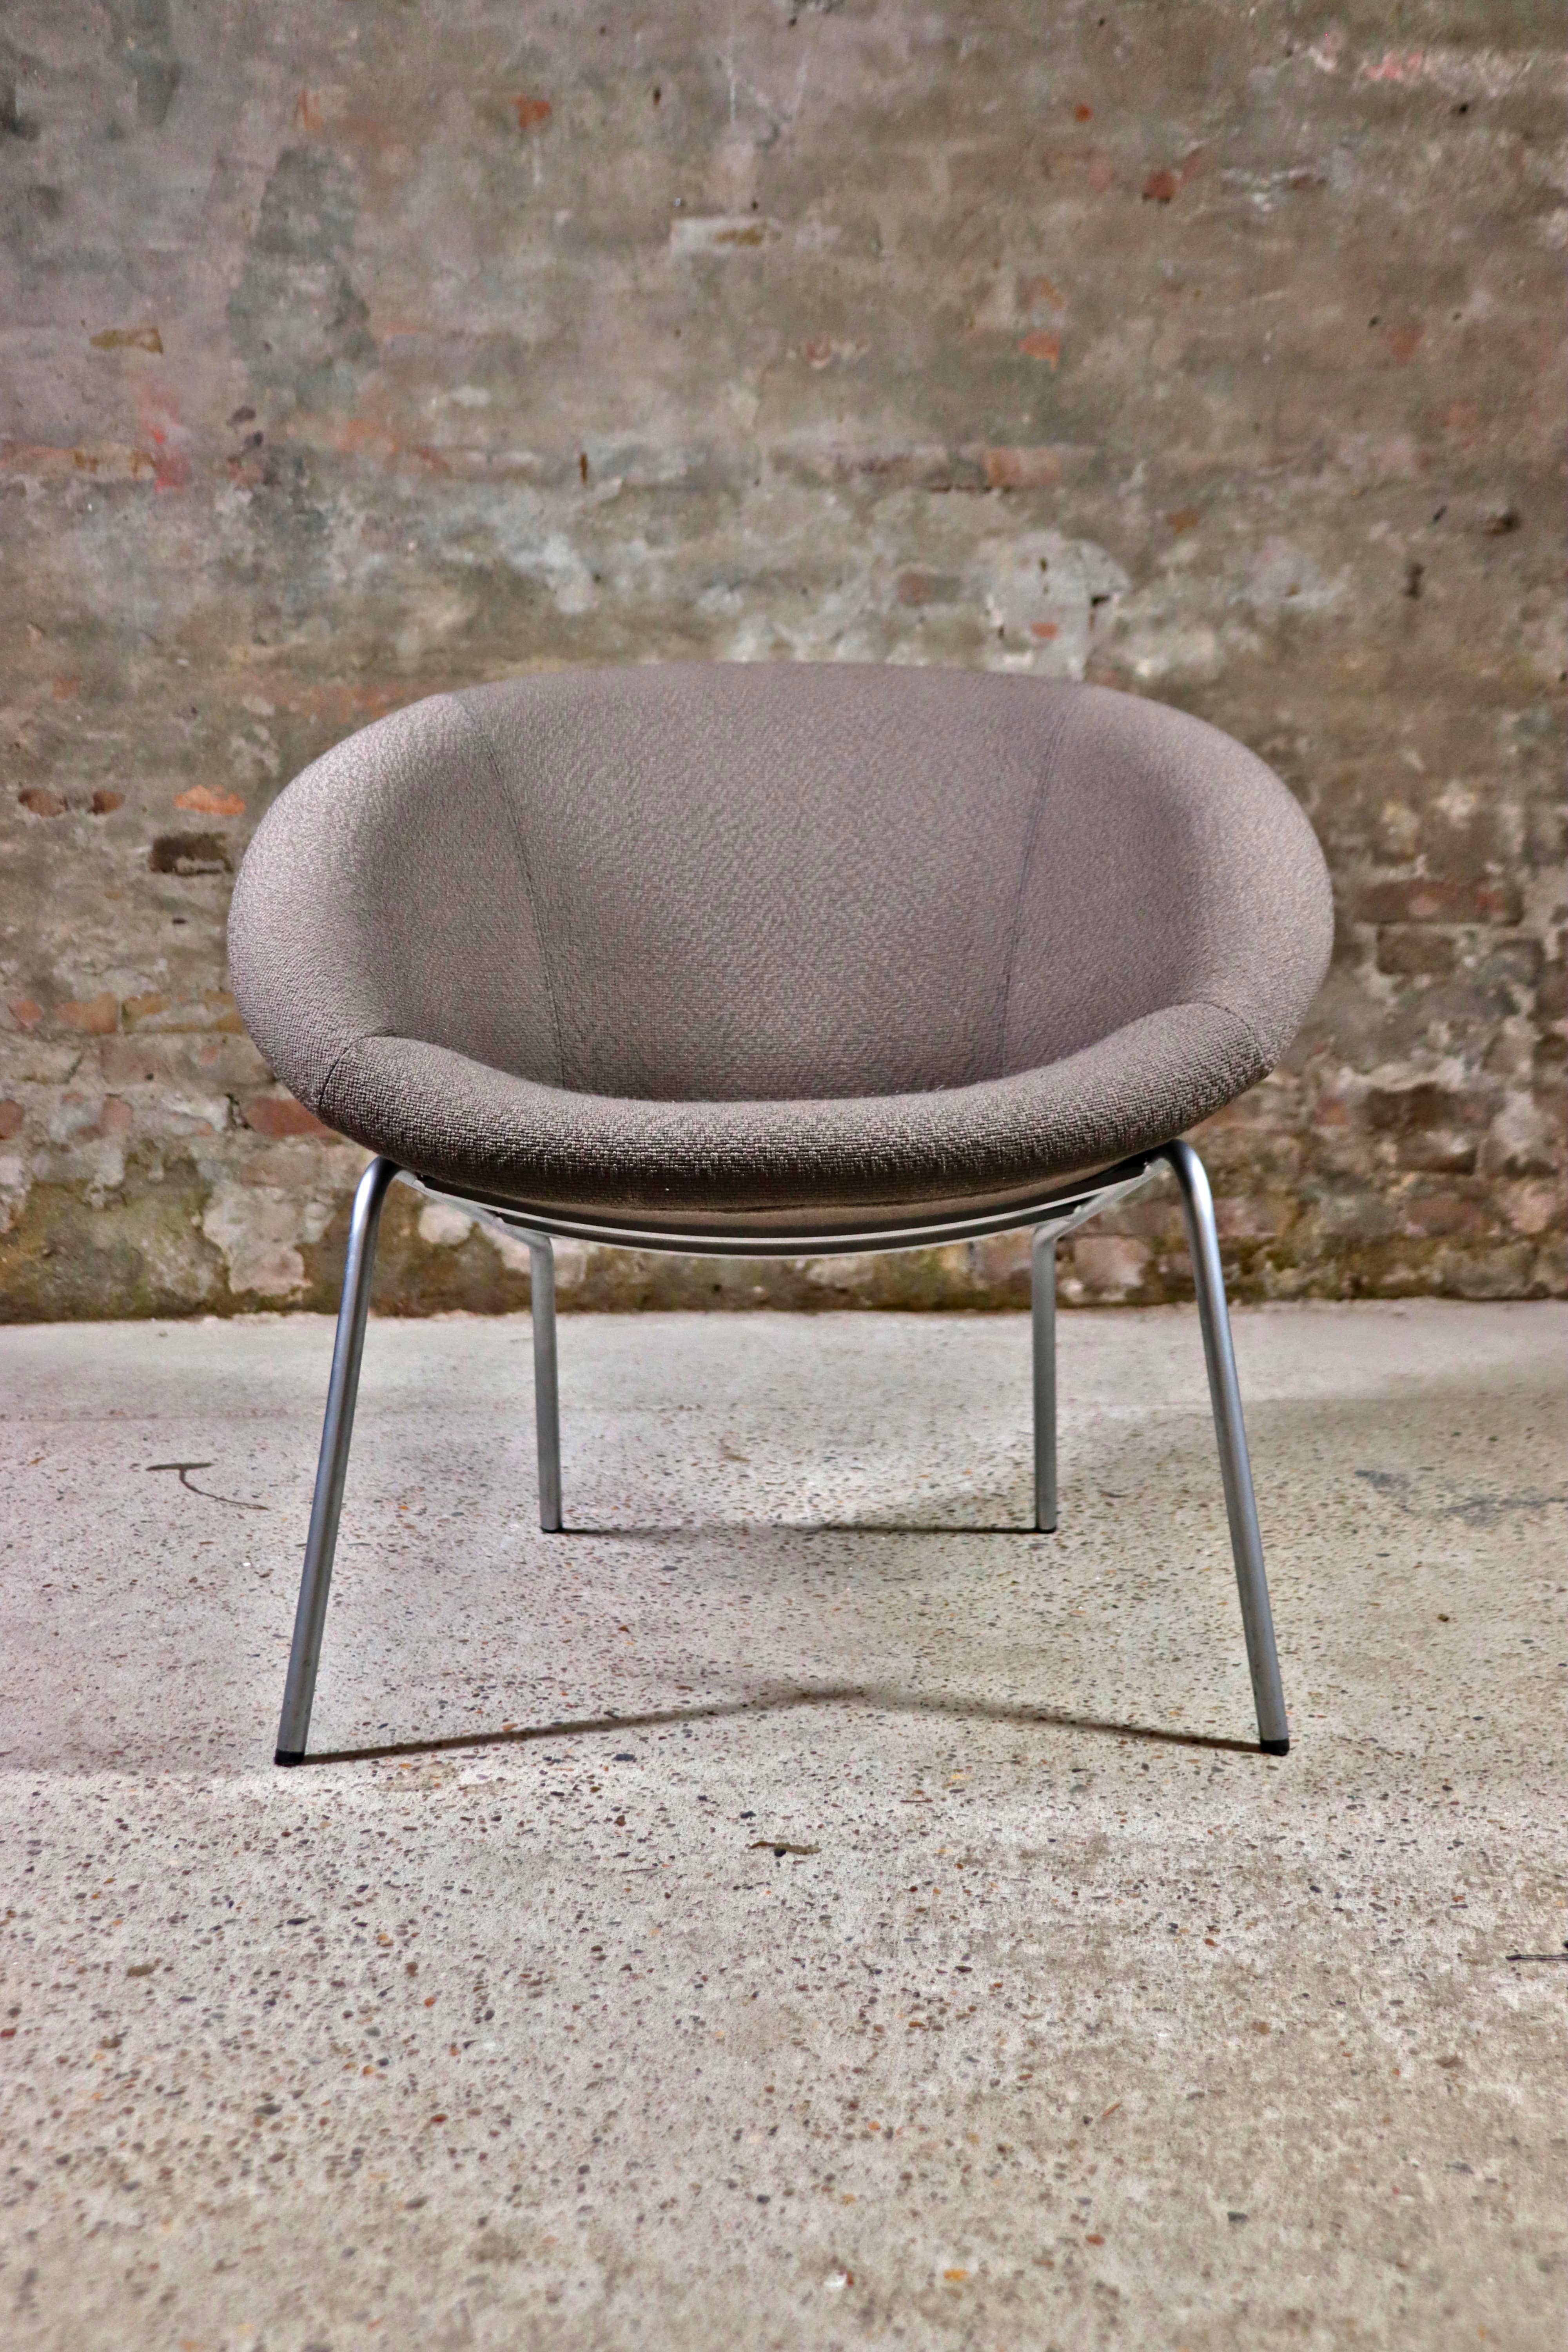 Le fauteuil Walter Knoll 369 a été conçu en 1956 par l'équipe Walter Knoll. À l'époque, la grande majorité de l'industrie allemande du meuble consistait en des meubles classiques et solides au design épuré. Mais Walter Knoll a inauguré une nouvelle